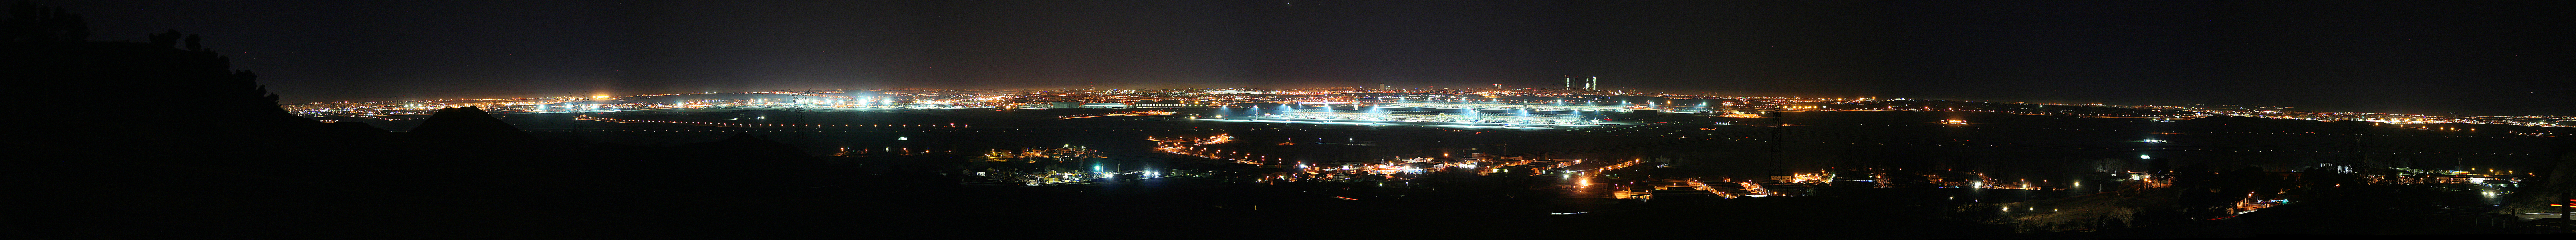  Panorámica nocturna de Madrid desde Paracuellos de Jarama, con el aeropuerto Adolfo Suárez, Madrid-Barajas en el centro